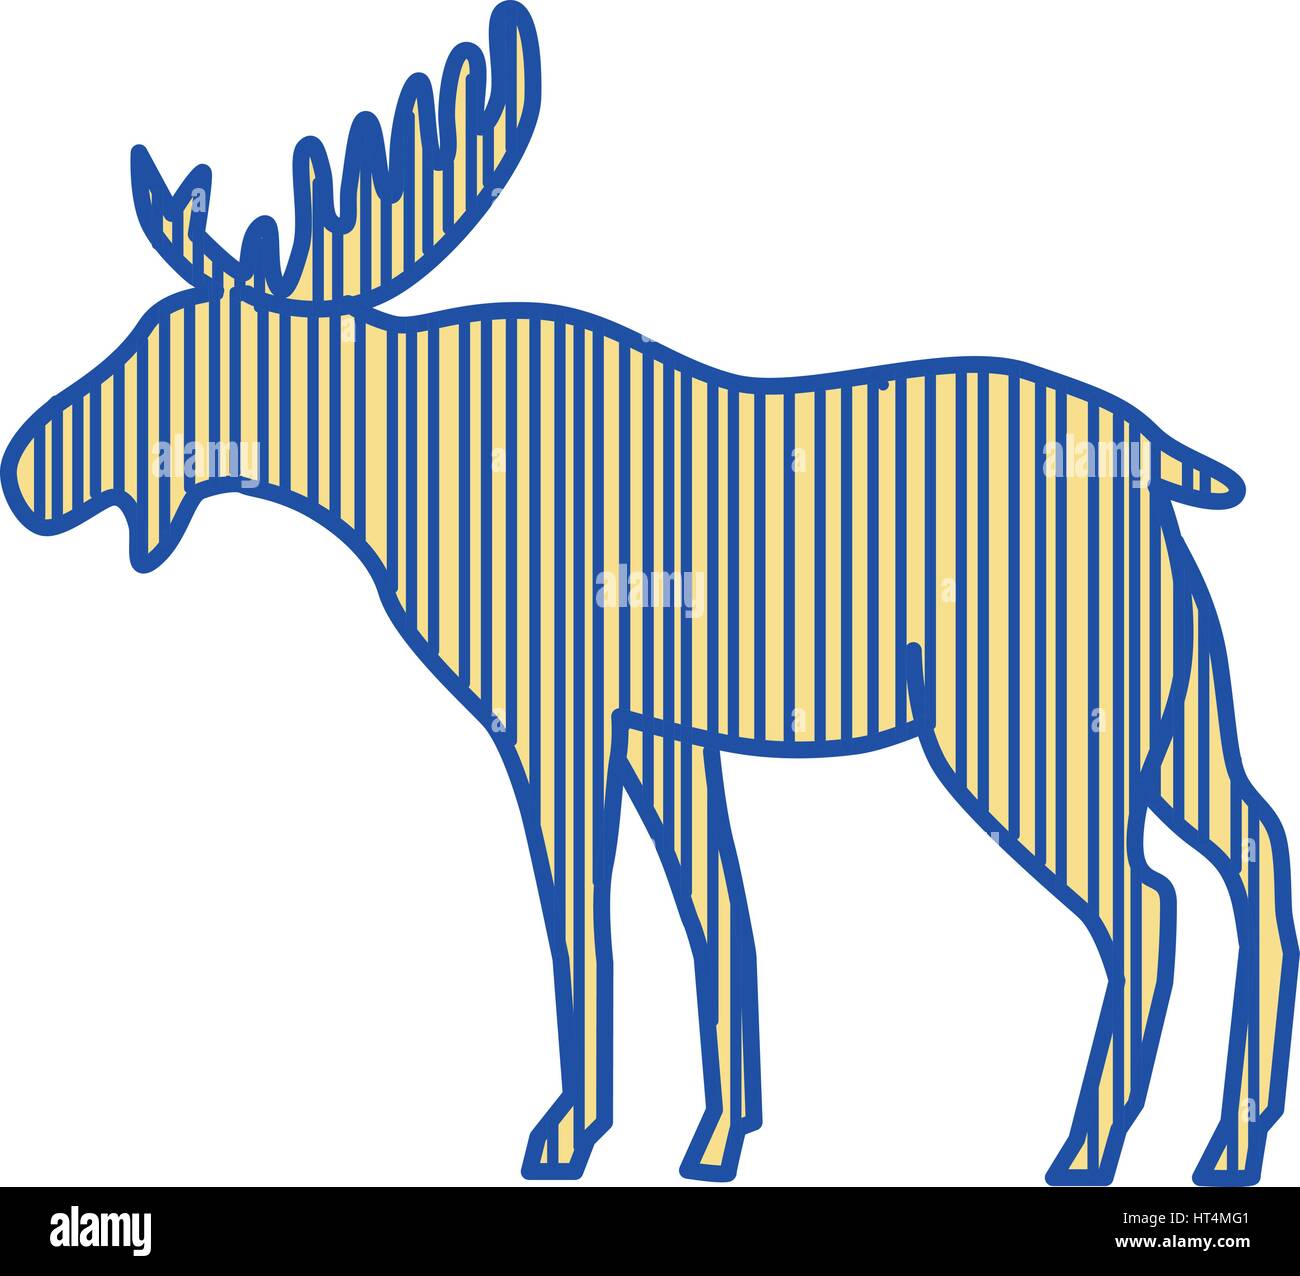 Disegno stile sketch illustrazione di un alce (Nord America) o elk (Eurasia), Alces alces, la più grande delle specie esistenti nella famiglia cervi dalla ampia Illustrazione Vettoriale